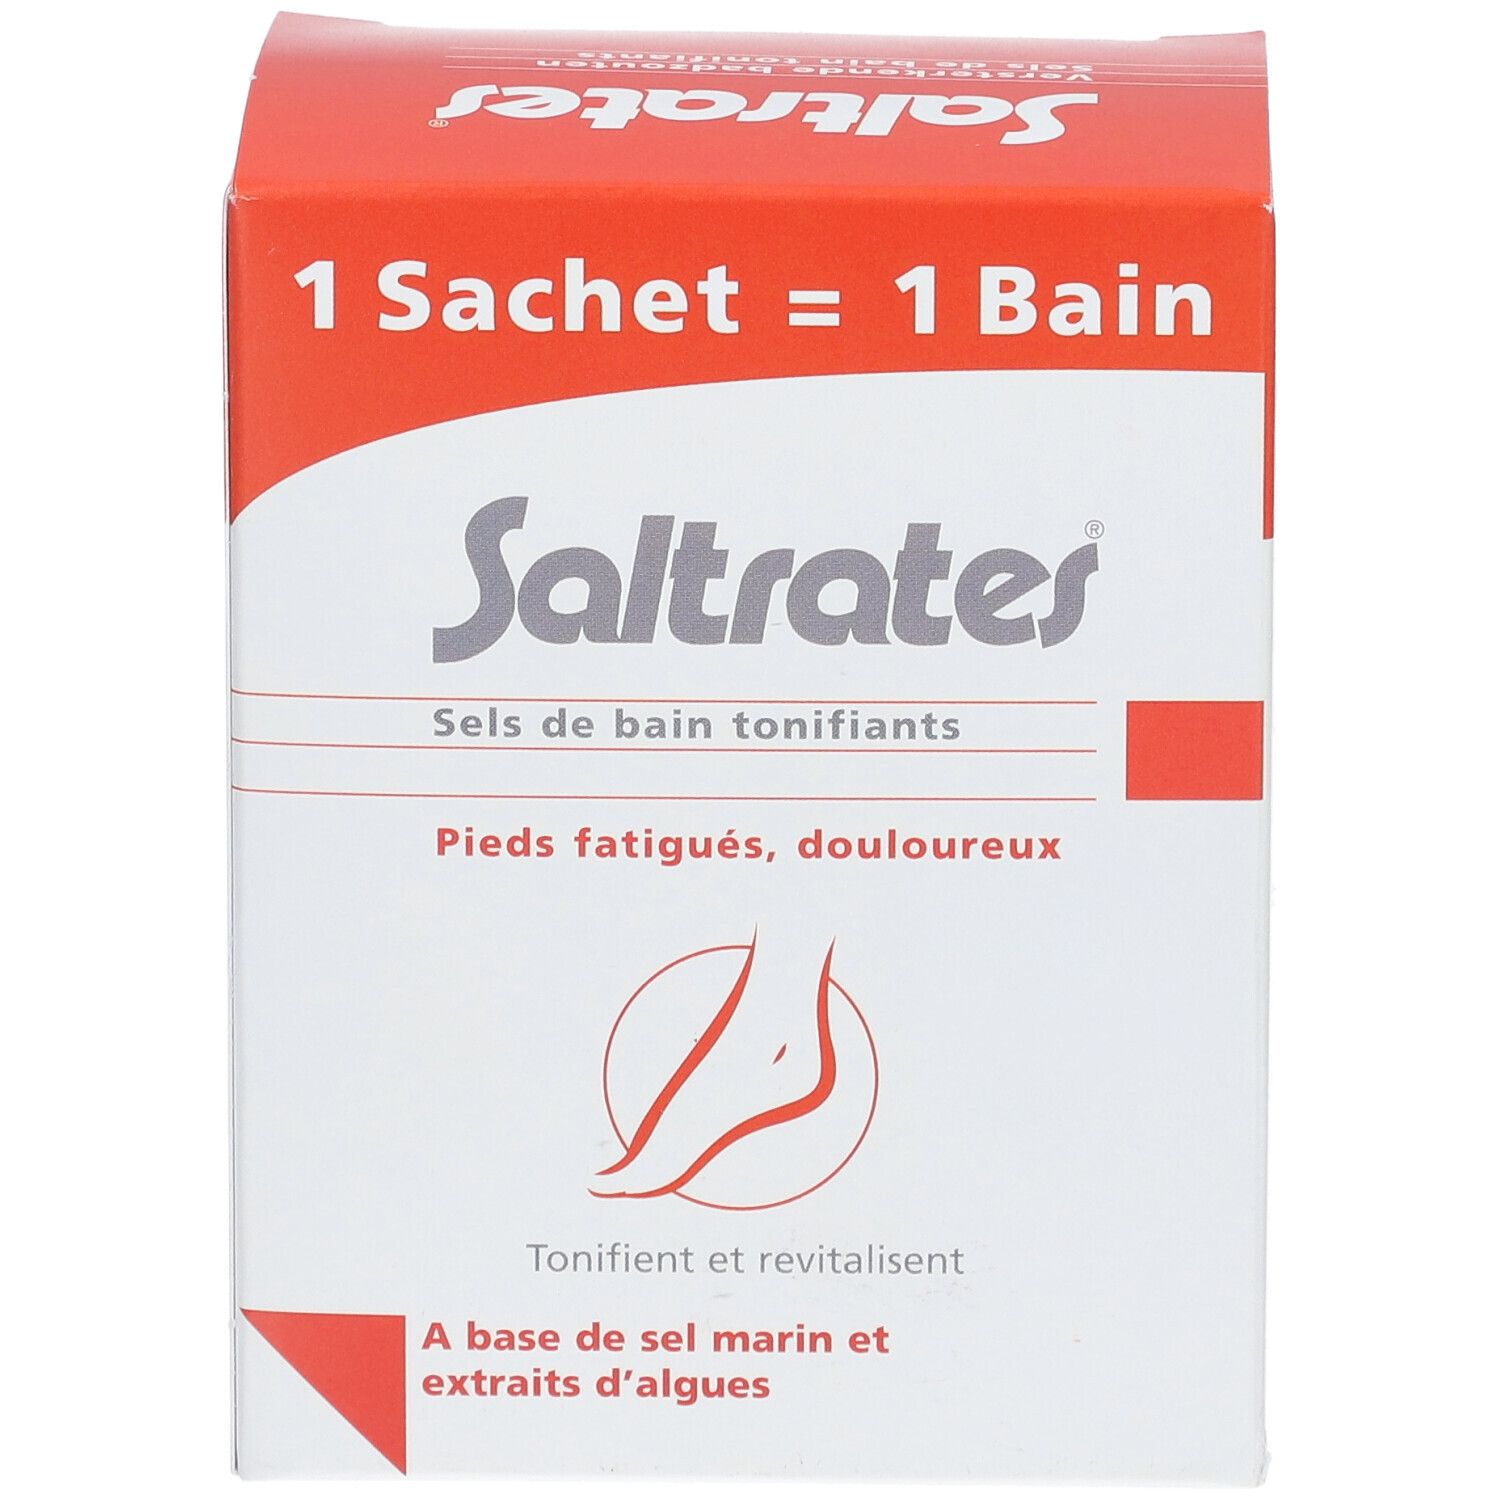 Saltrates® Sels de bain tonifiants Pieds fatigués & douloureux